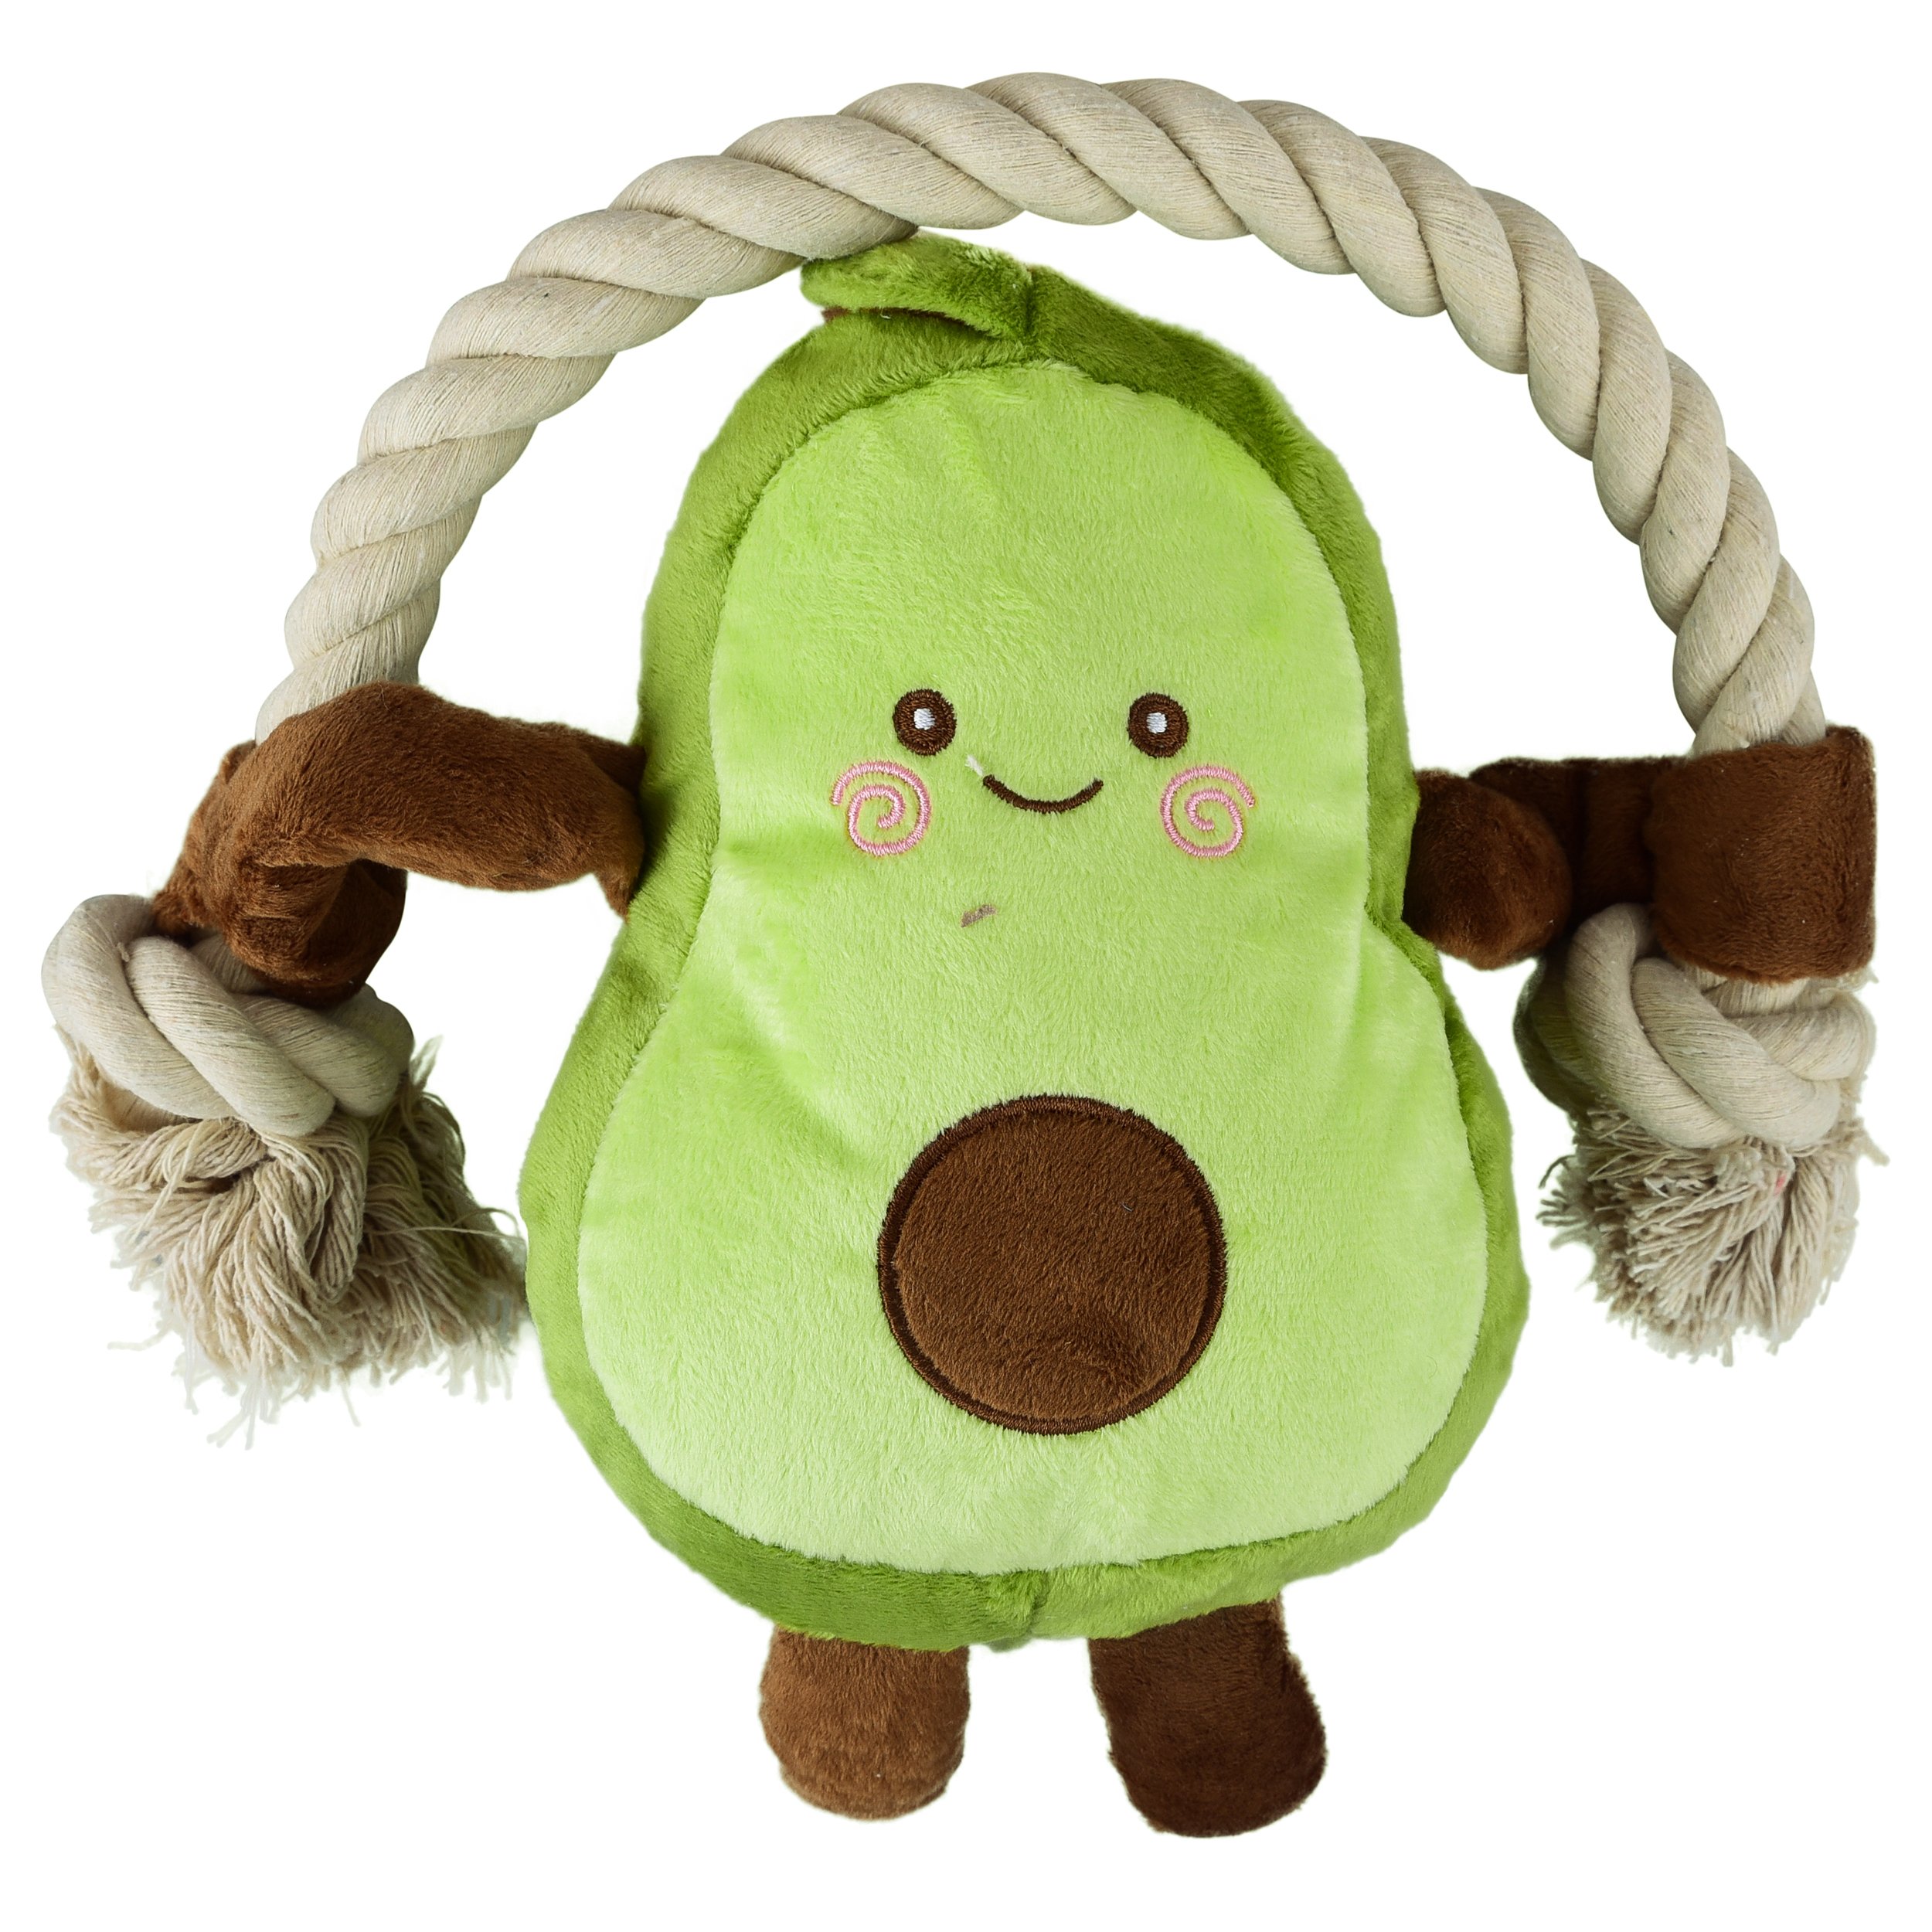 Avocado Toy 1.JPG